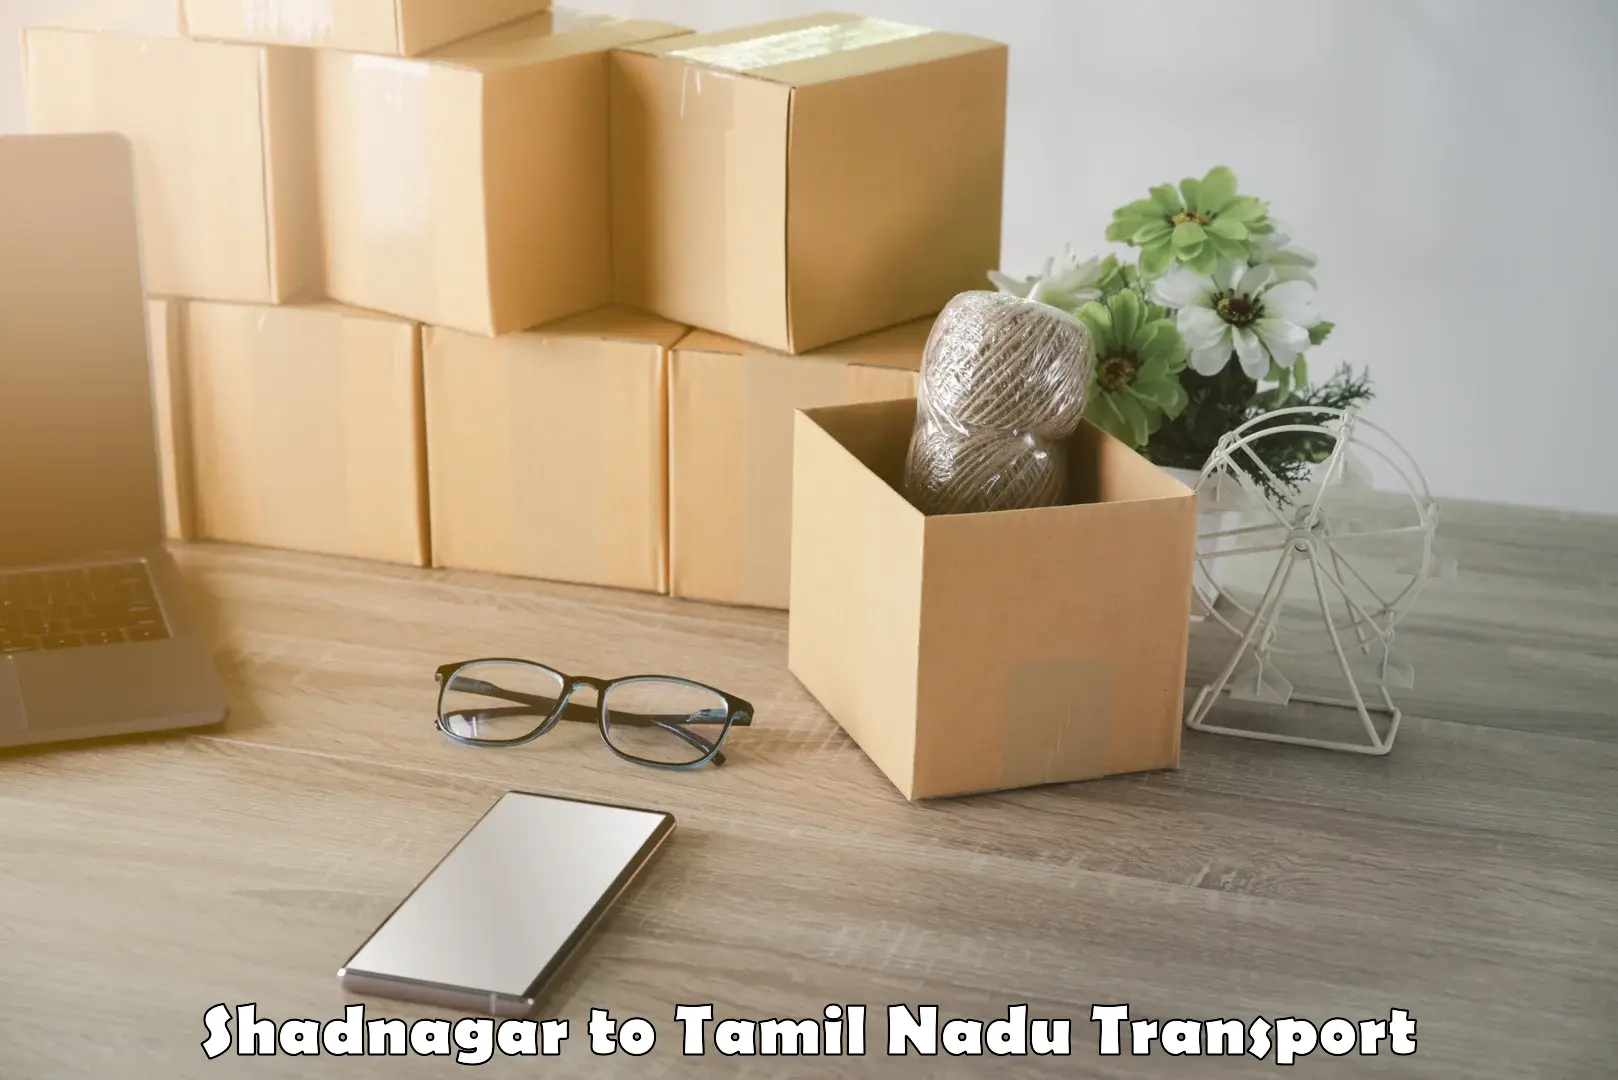 Road transport services Shadnagar to Tamil Nadu